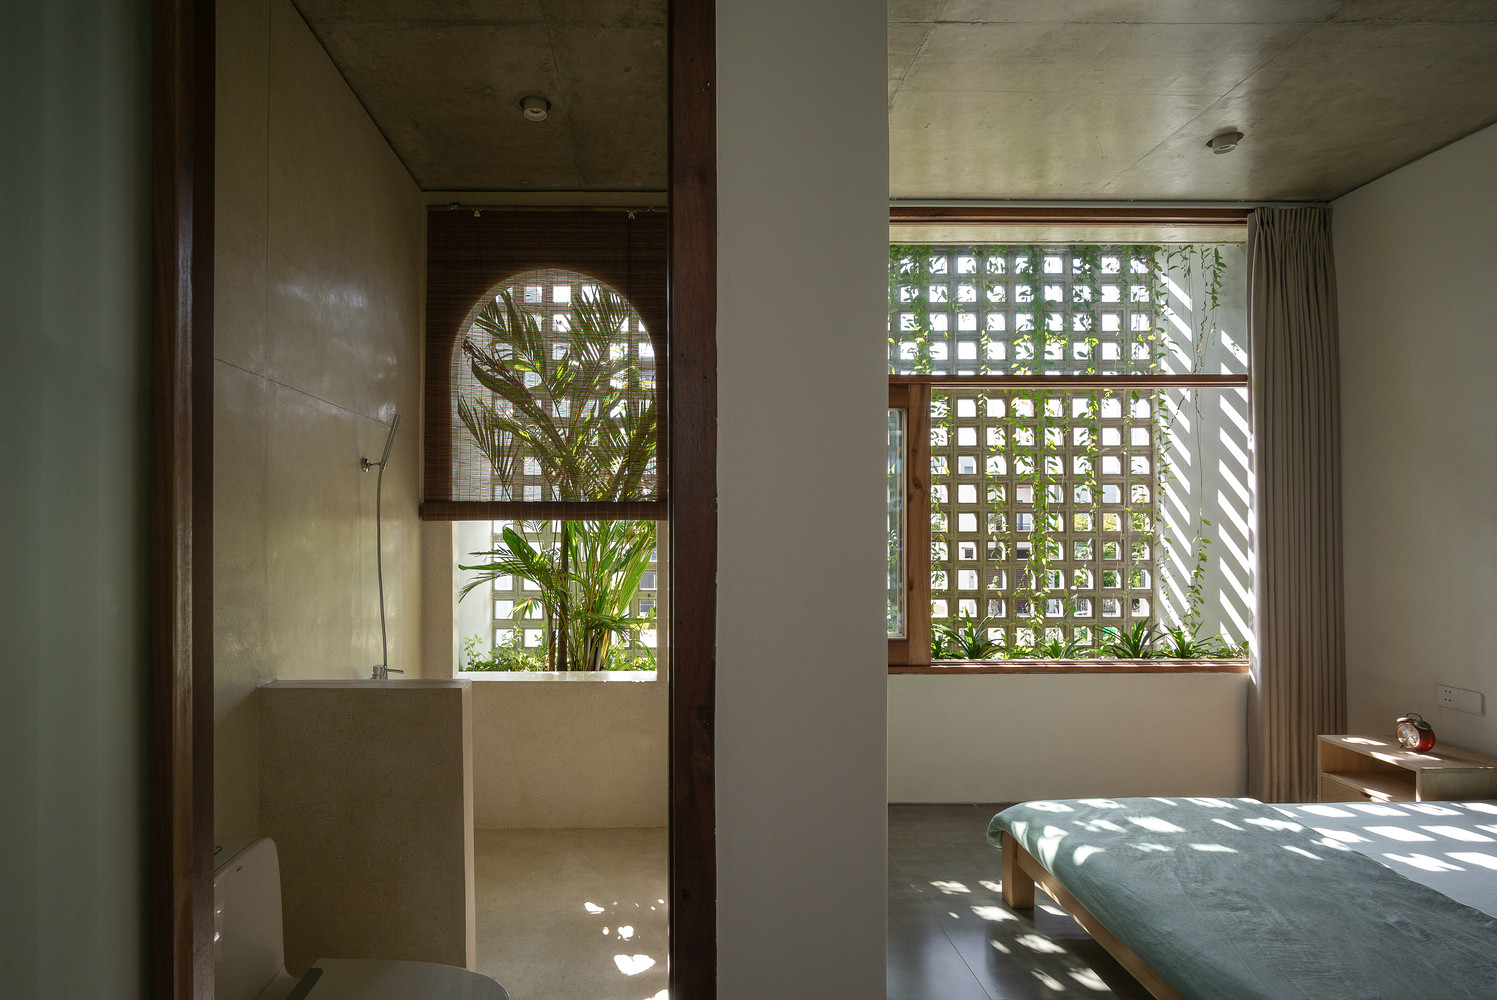 Cửa kính trong suốt, với thiết kế cây xanh kết hợp tường là các ô gạch thoáng phía sau nhà khiến phòng ngủ thực sự gần gũi với thiên nhiên.